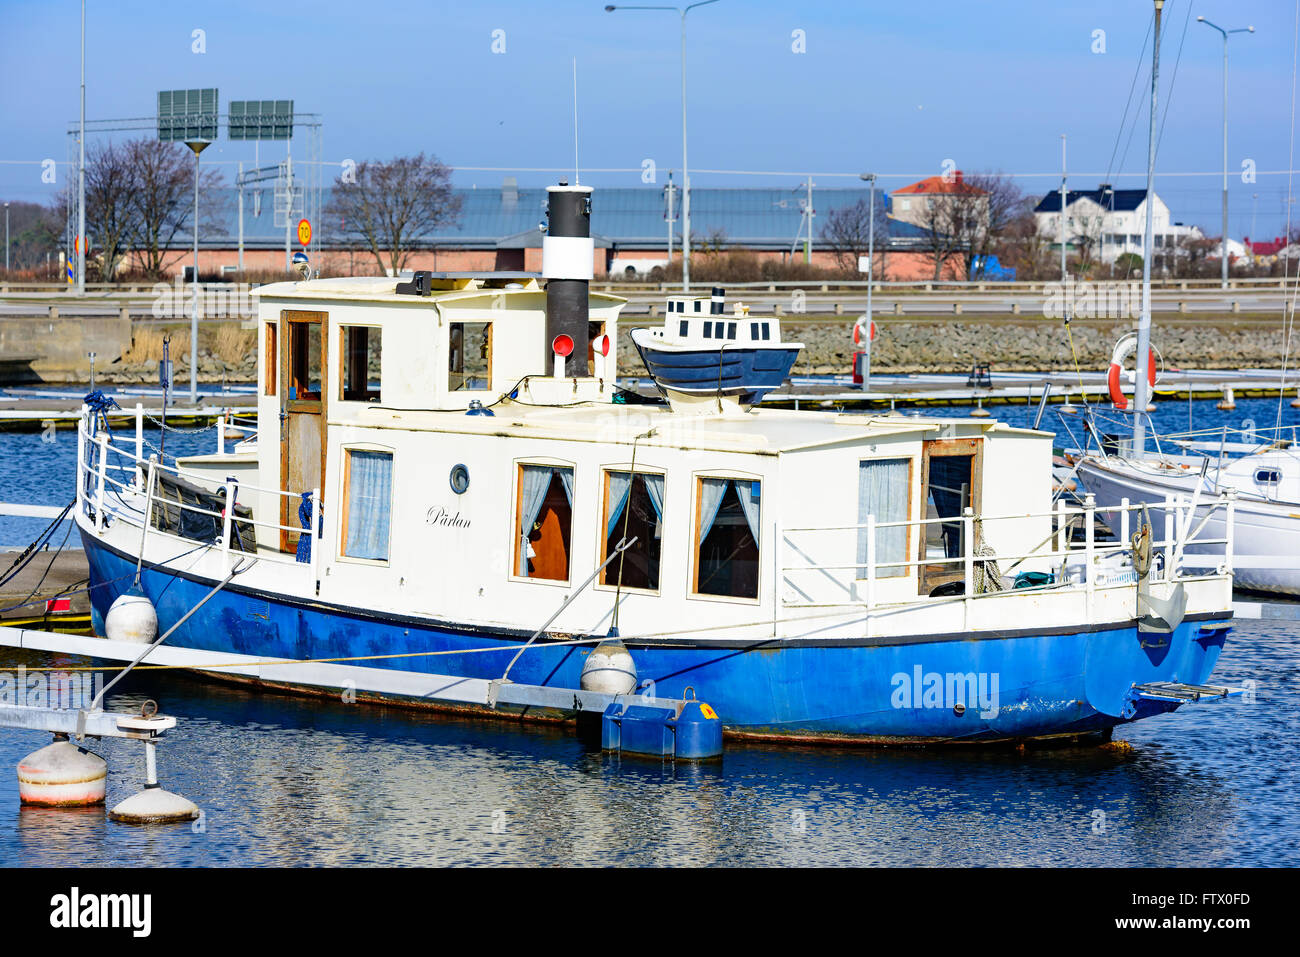 Karlskrona, Svezia - 27 Marzo 2016: piccola copia in miniatura di una barca posto sulla sommità della barca originale nella città marina. Foto Stock